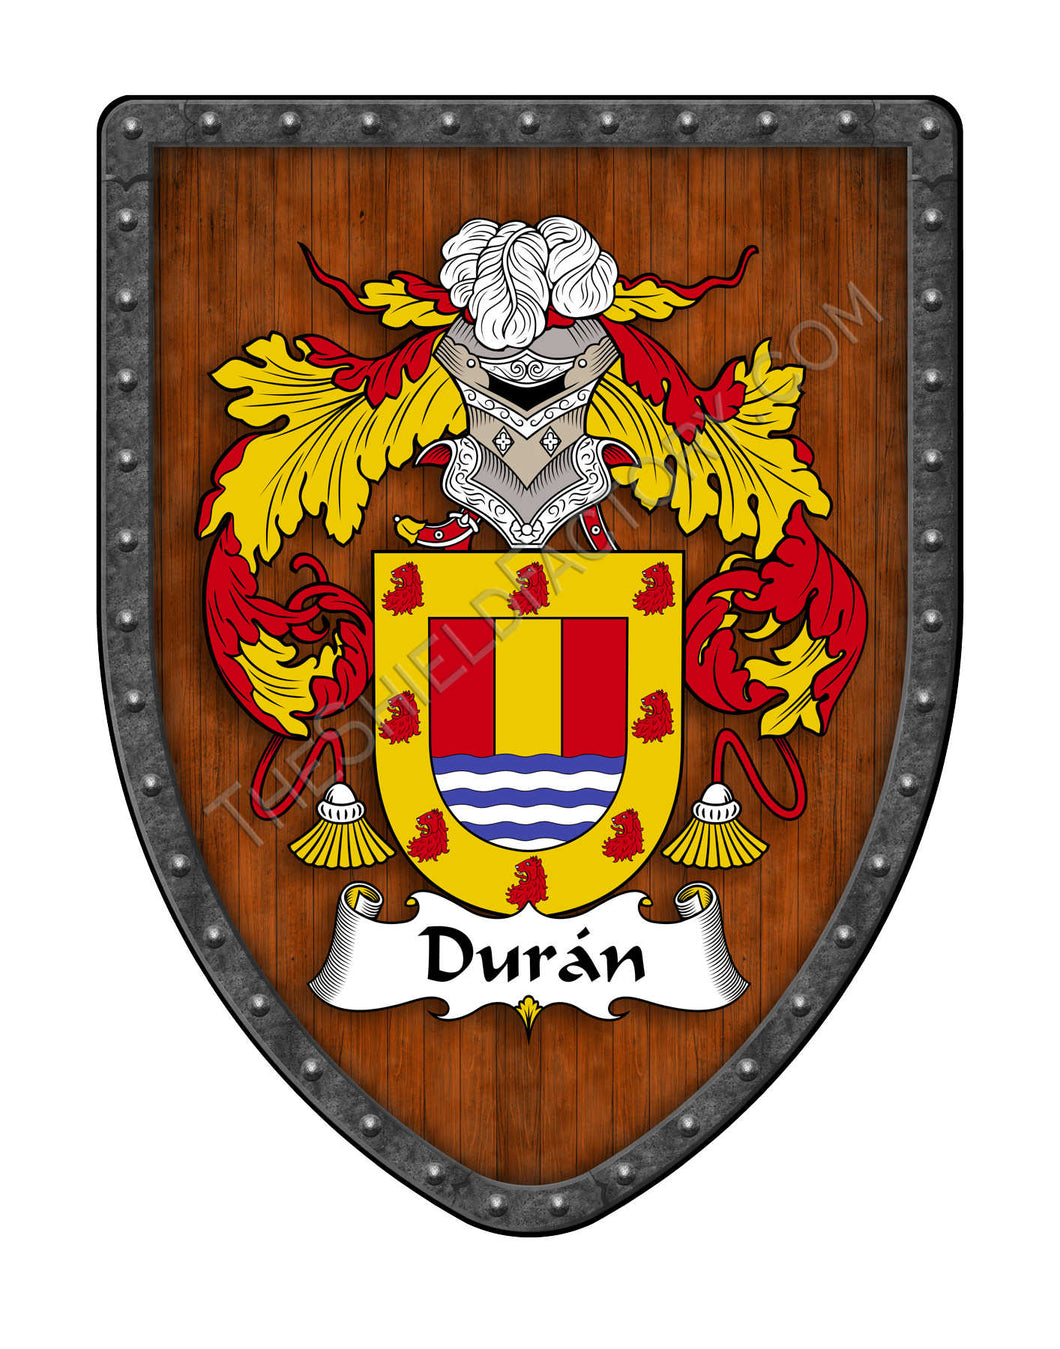 Durán Family Coat of Arms